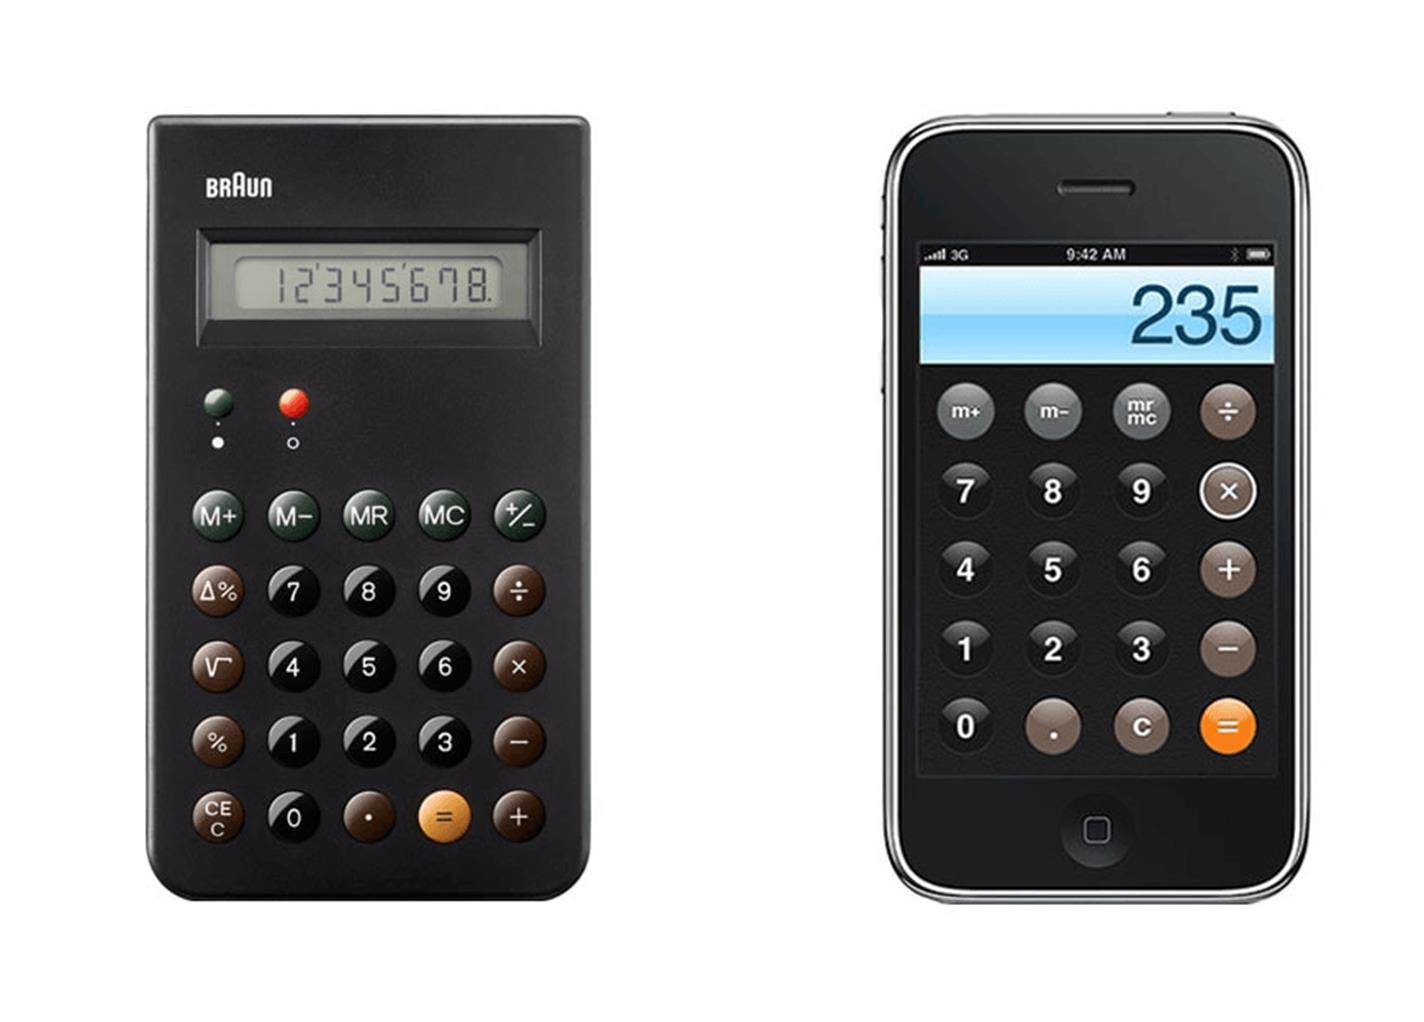 Калькулятор на айфоне похож на реальный аналог.